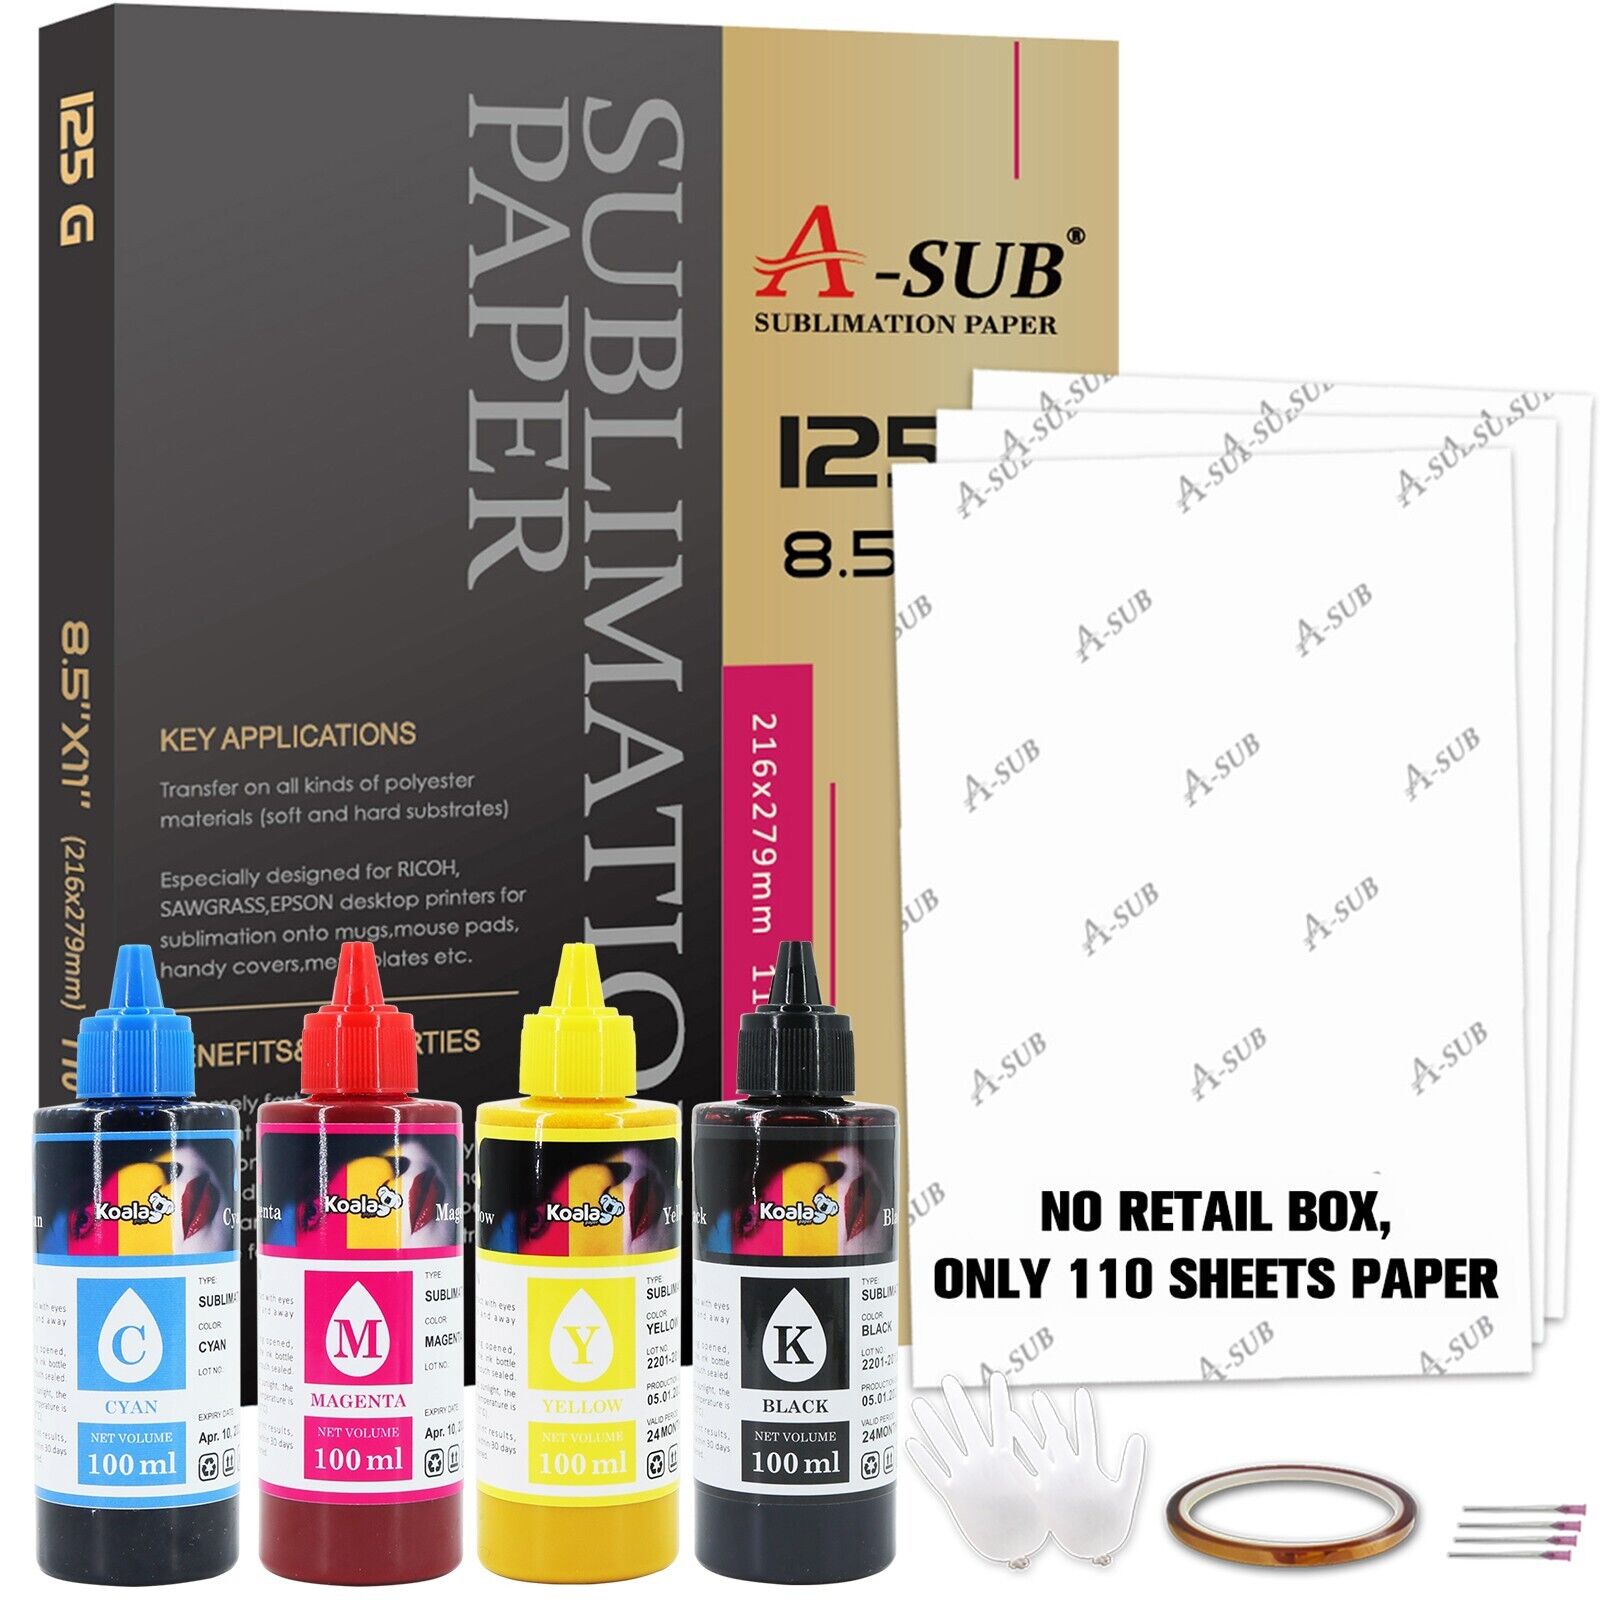 Bundle A-SUB Sublimation Paper 8.5x11 + KOALA Sublimation Ink for Epson Printers